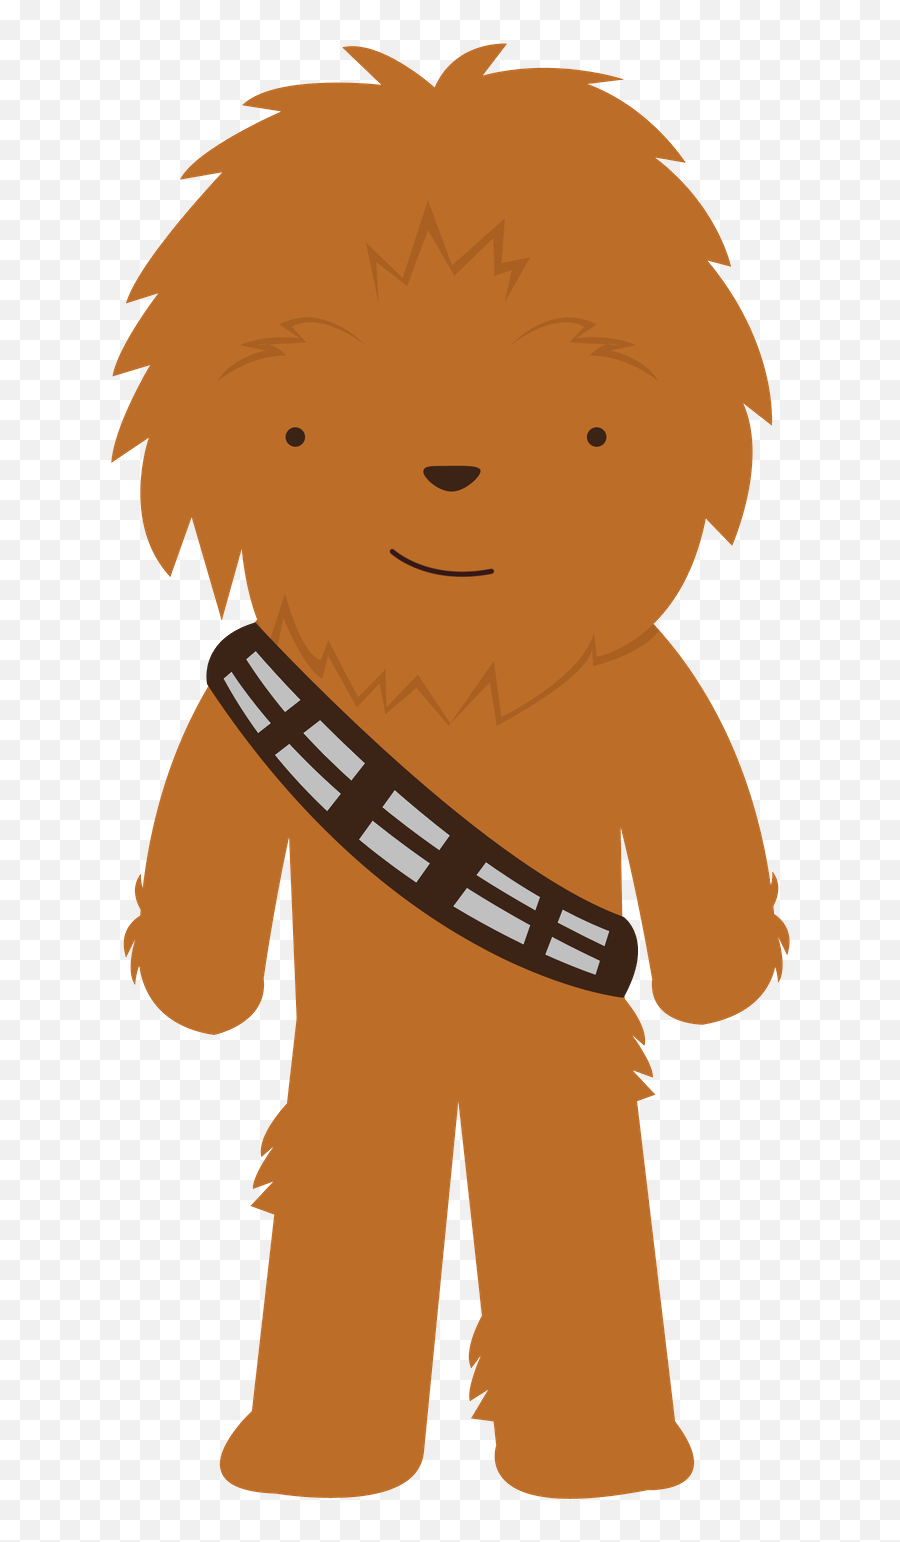 Library Of Star Wars Wookie Jpg Library - Cute Star Wars Character Png Emoji,Star Wars Emoji Yoda